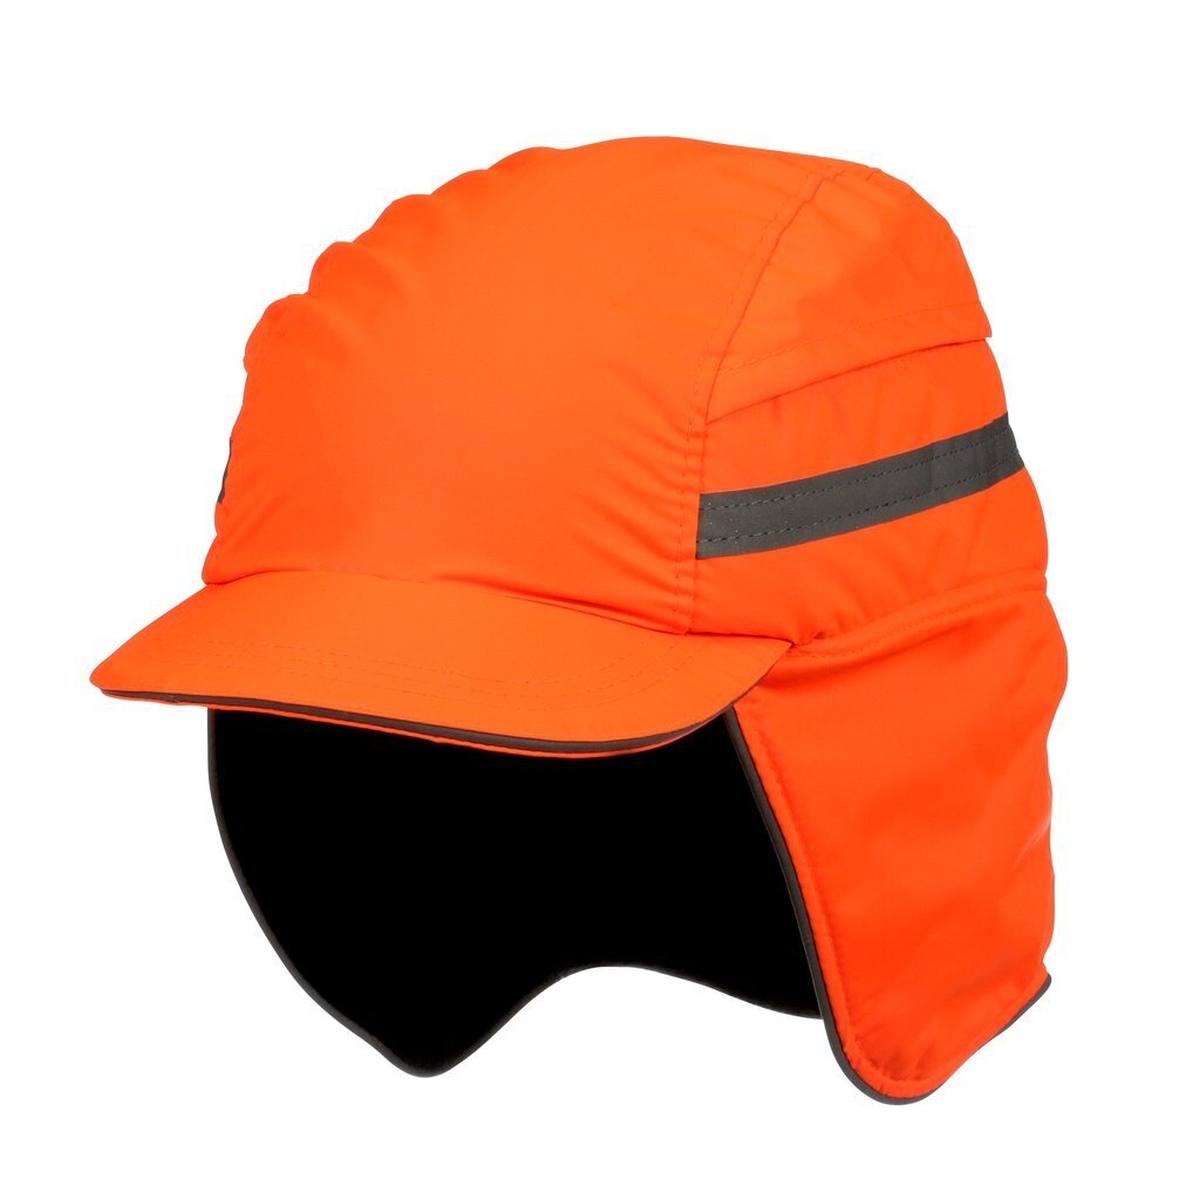 3M Scott First Base 3 Winter - berretto a botta in colore arancio segnale - visiera accorciata 55 mm, EN812